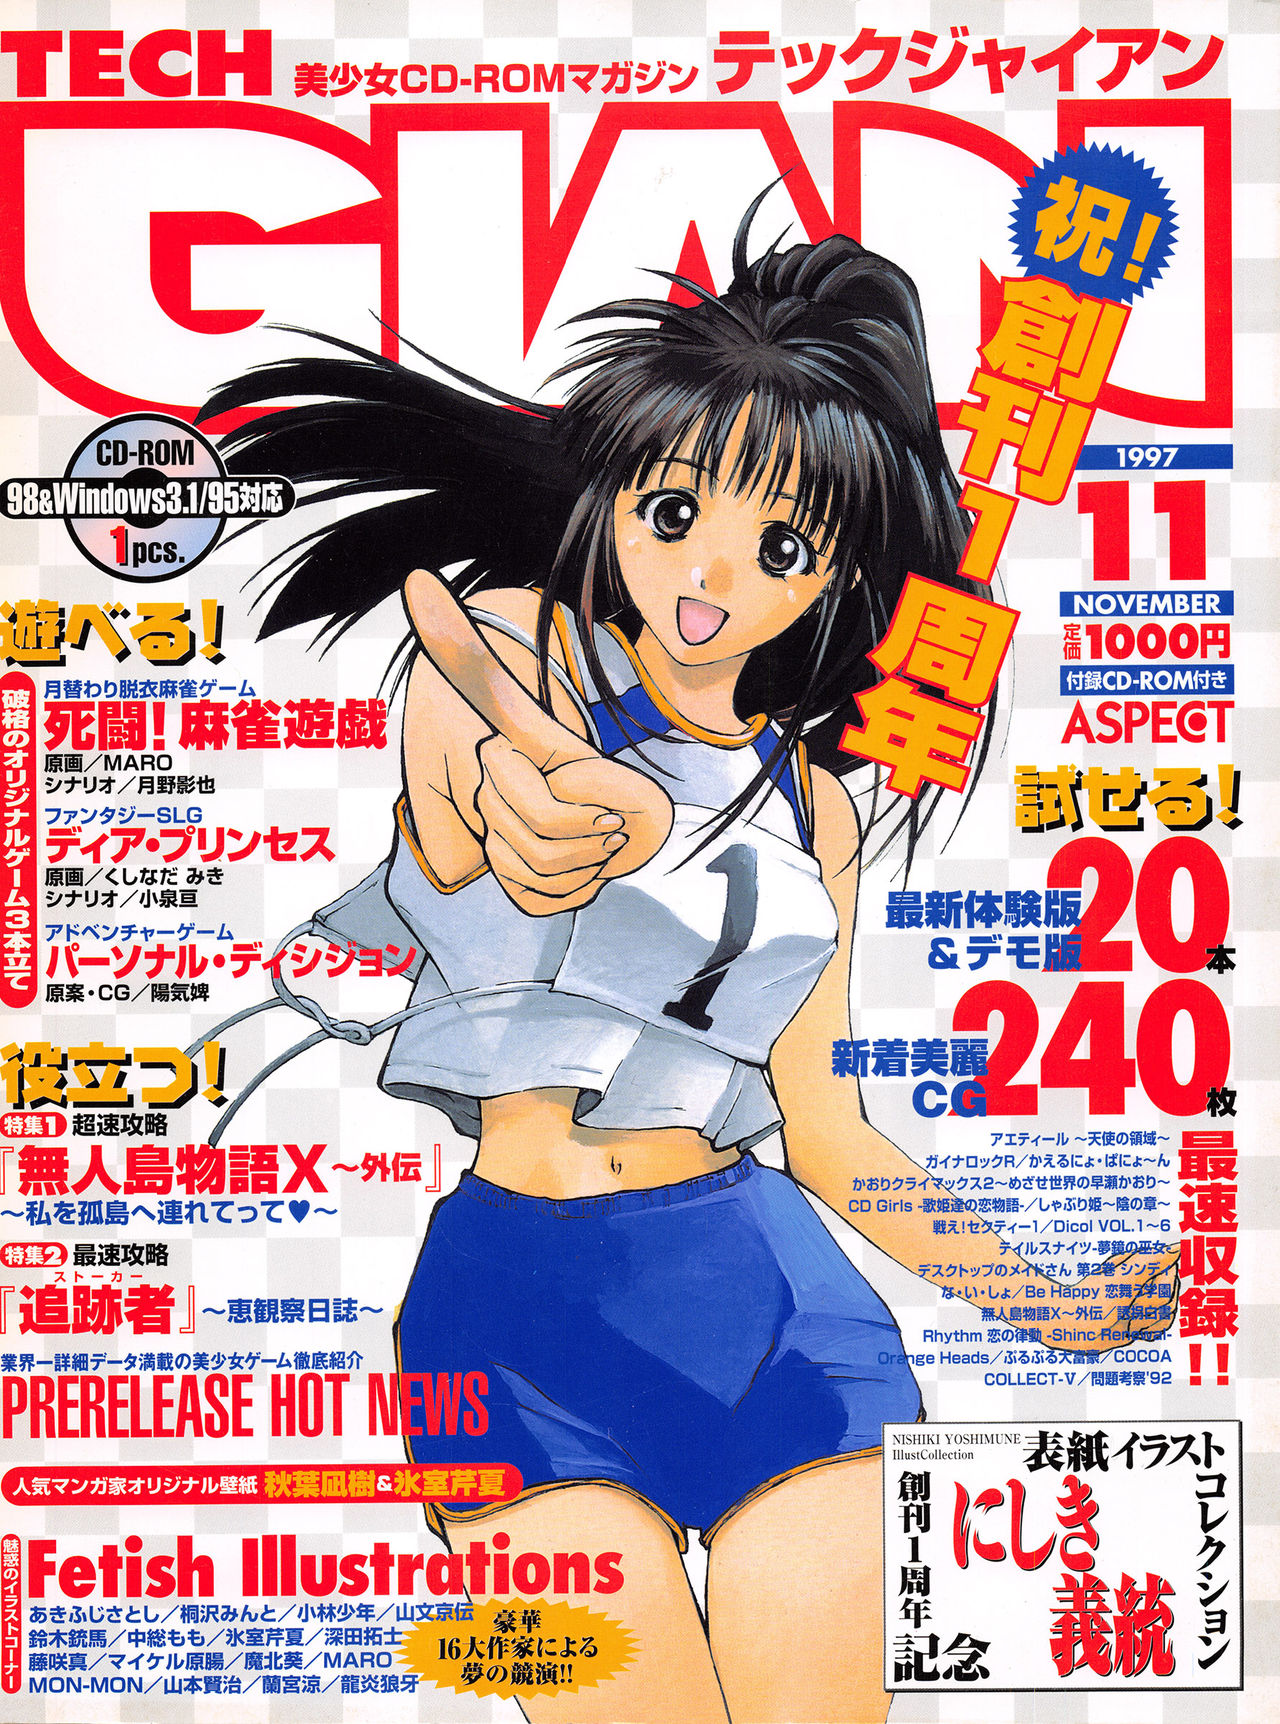 Tech Gian Issue 13 (November 1997) 